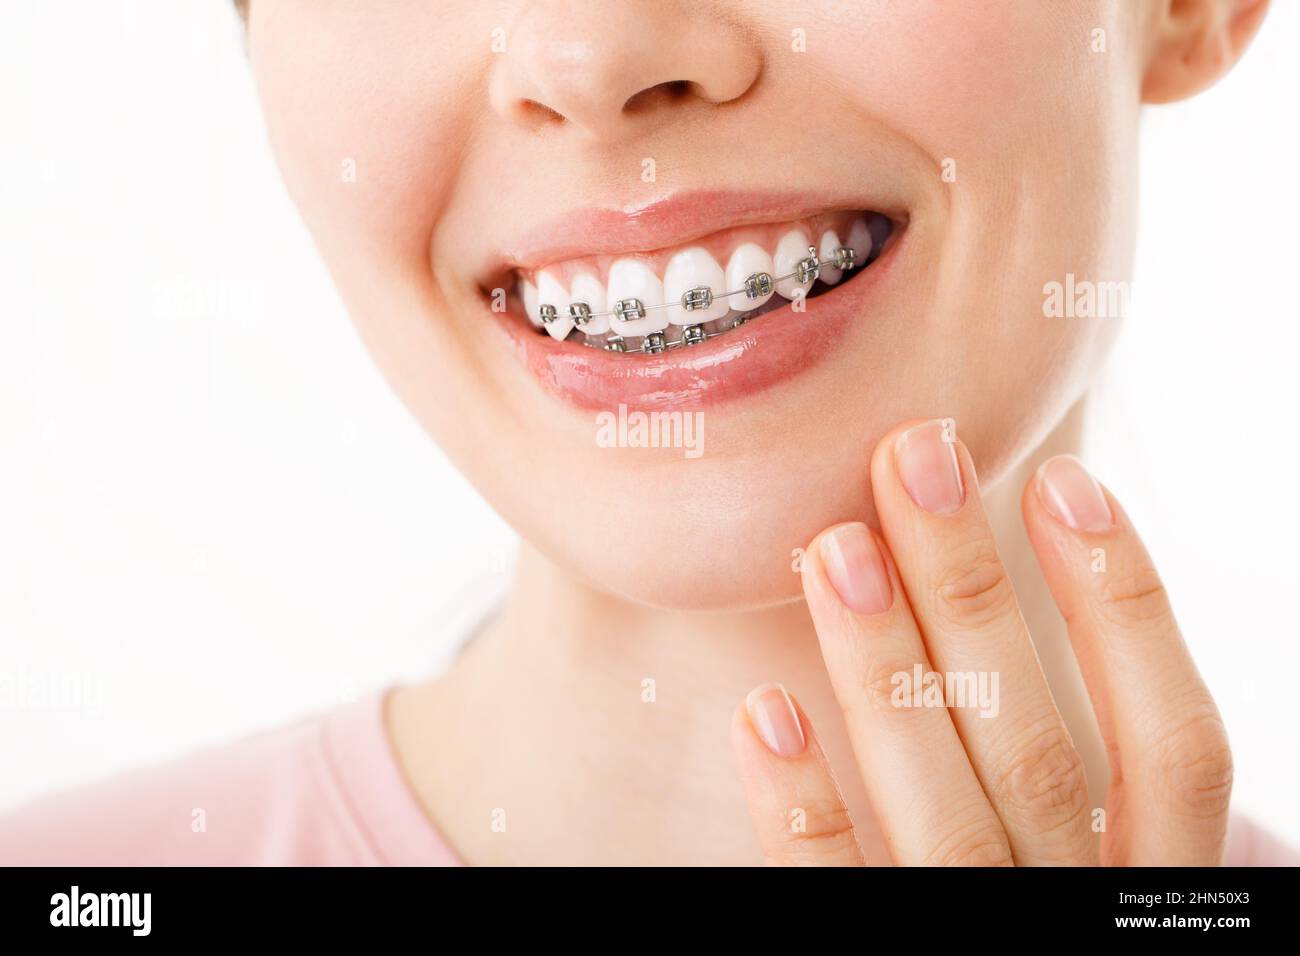 Sorridi con bretelle trattamento ortodontico. Concetto di cura dentale. Bella donna sorriso sano primo piano. Primo piano staffe in ceramica e metallo sui denti Foto Stock